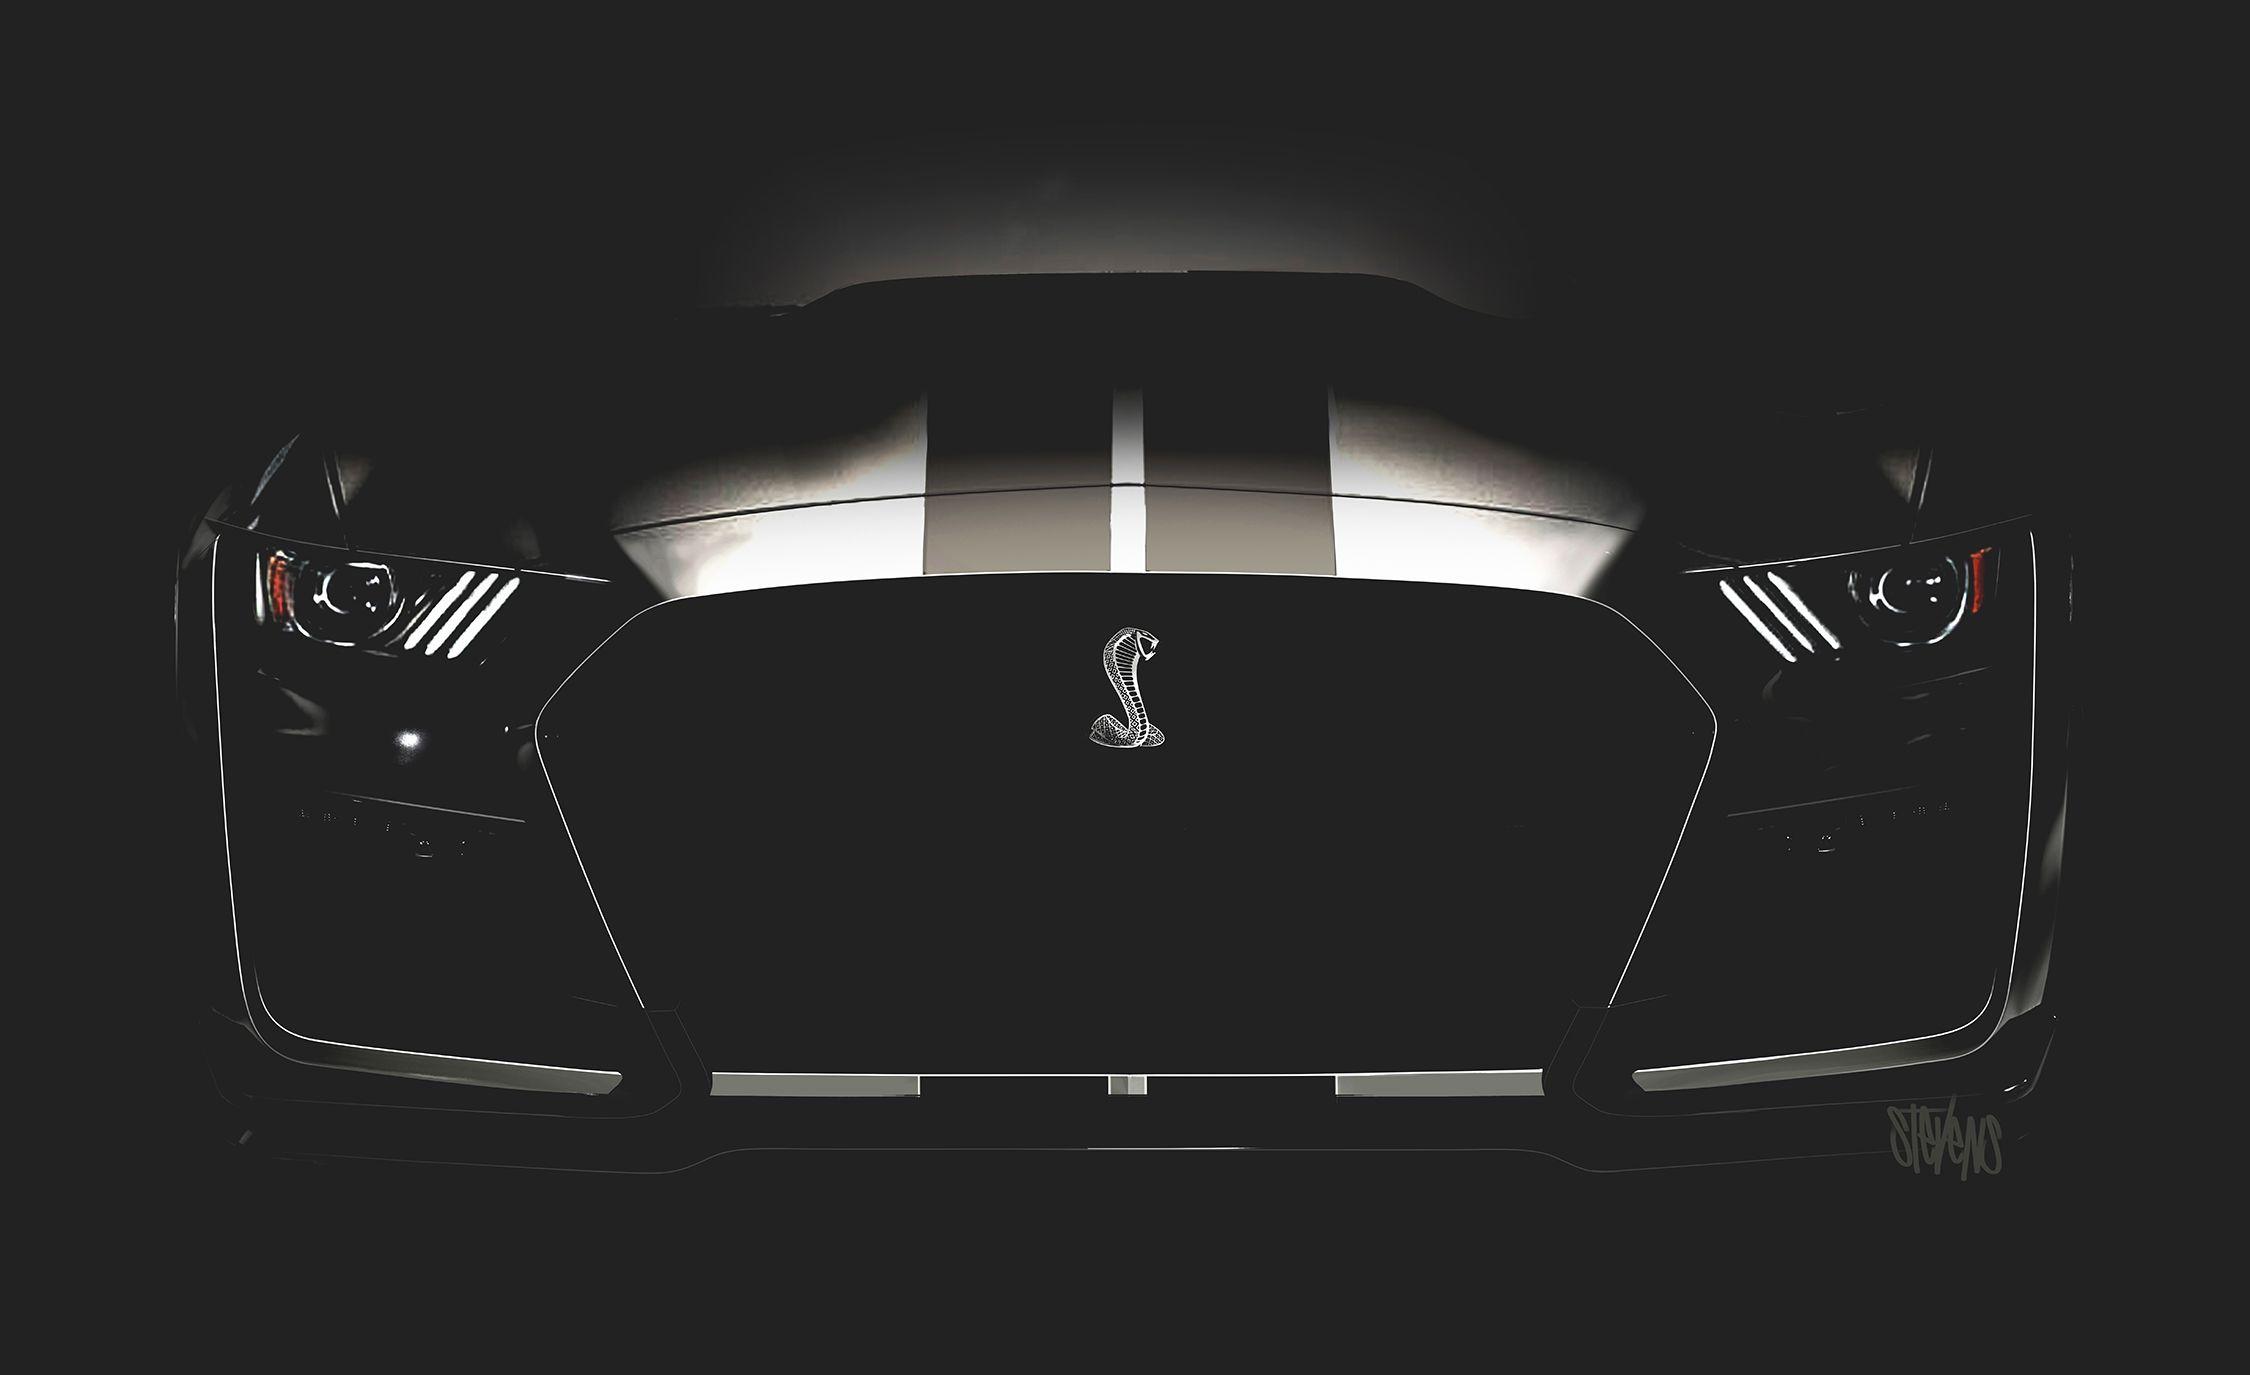 Black Mustang Cobra Wallpaper